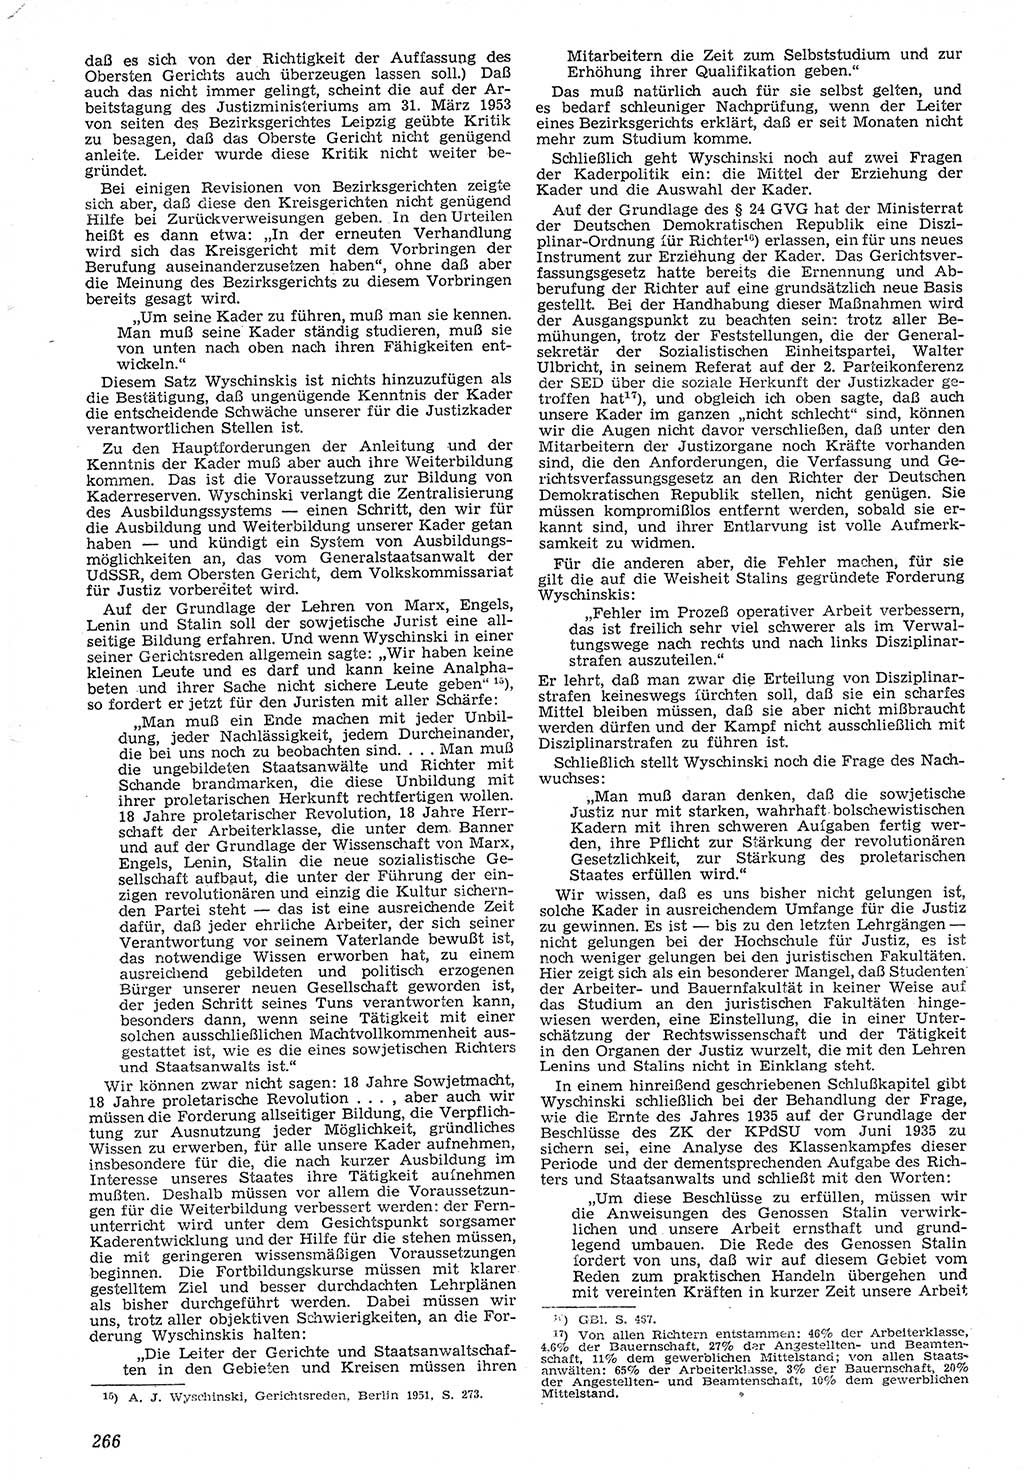 Neue Justiz (NJ), Zeitschrift für Recht und Rechtswissenschaft [Deutsche Demokratische Republik (DDR)], 7. Jahrgang 1953, Seite 266 (NJ DDR 1953, S. 266)